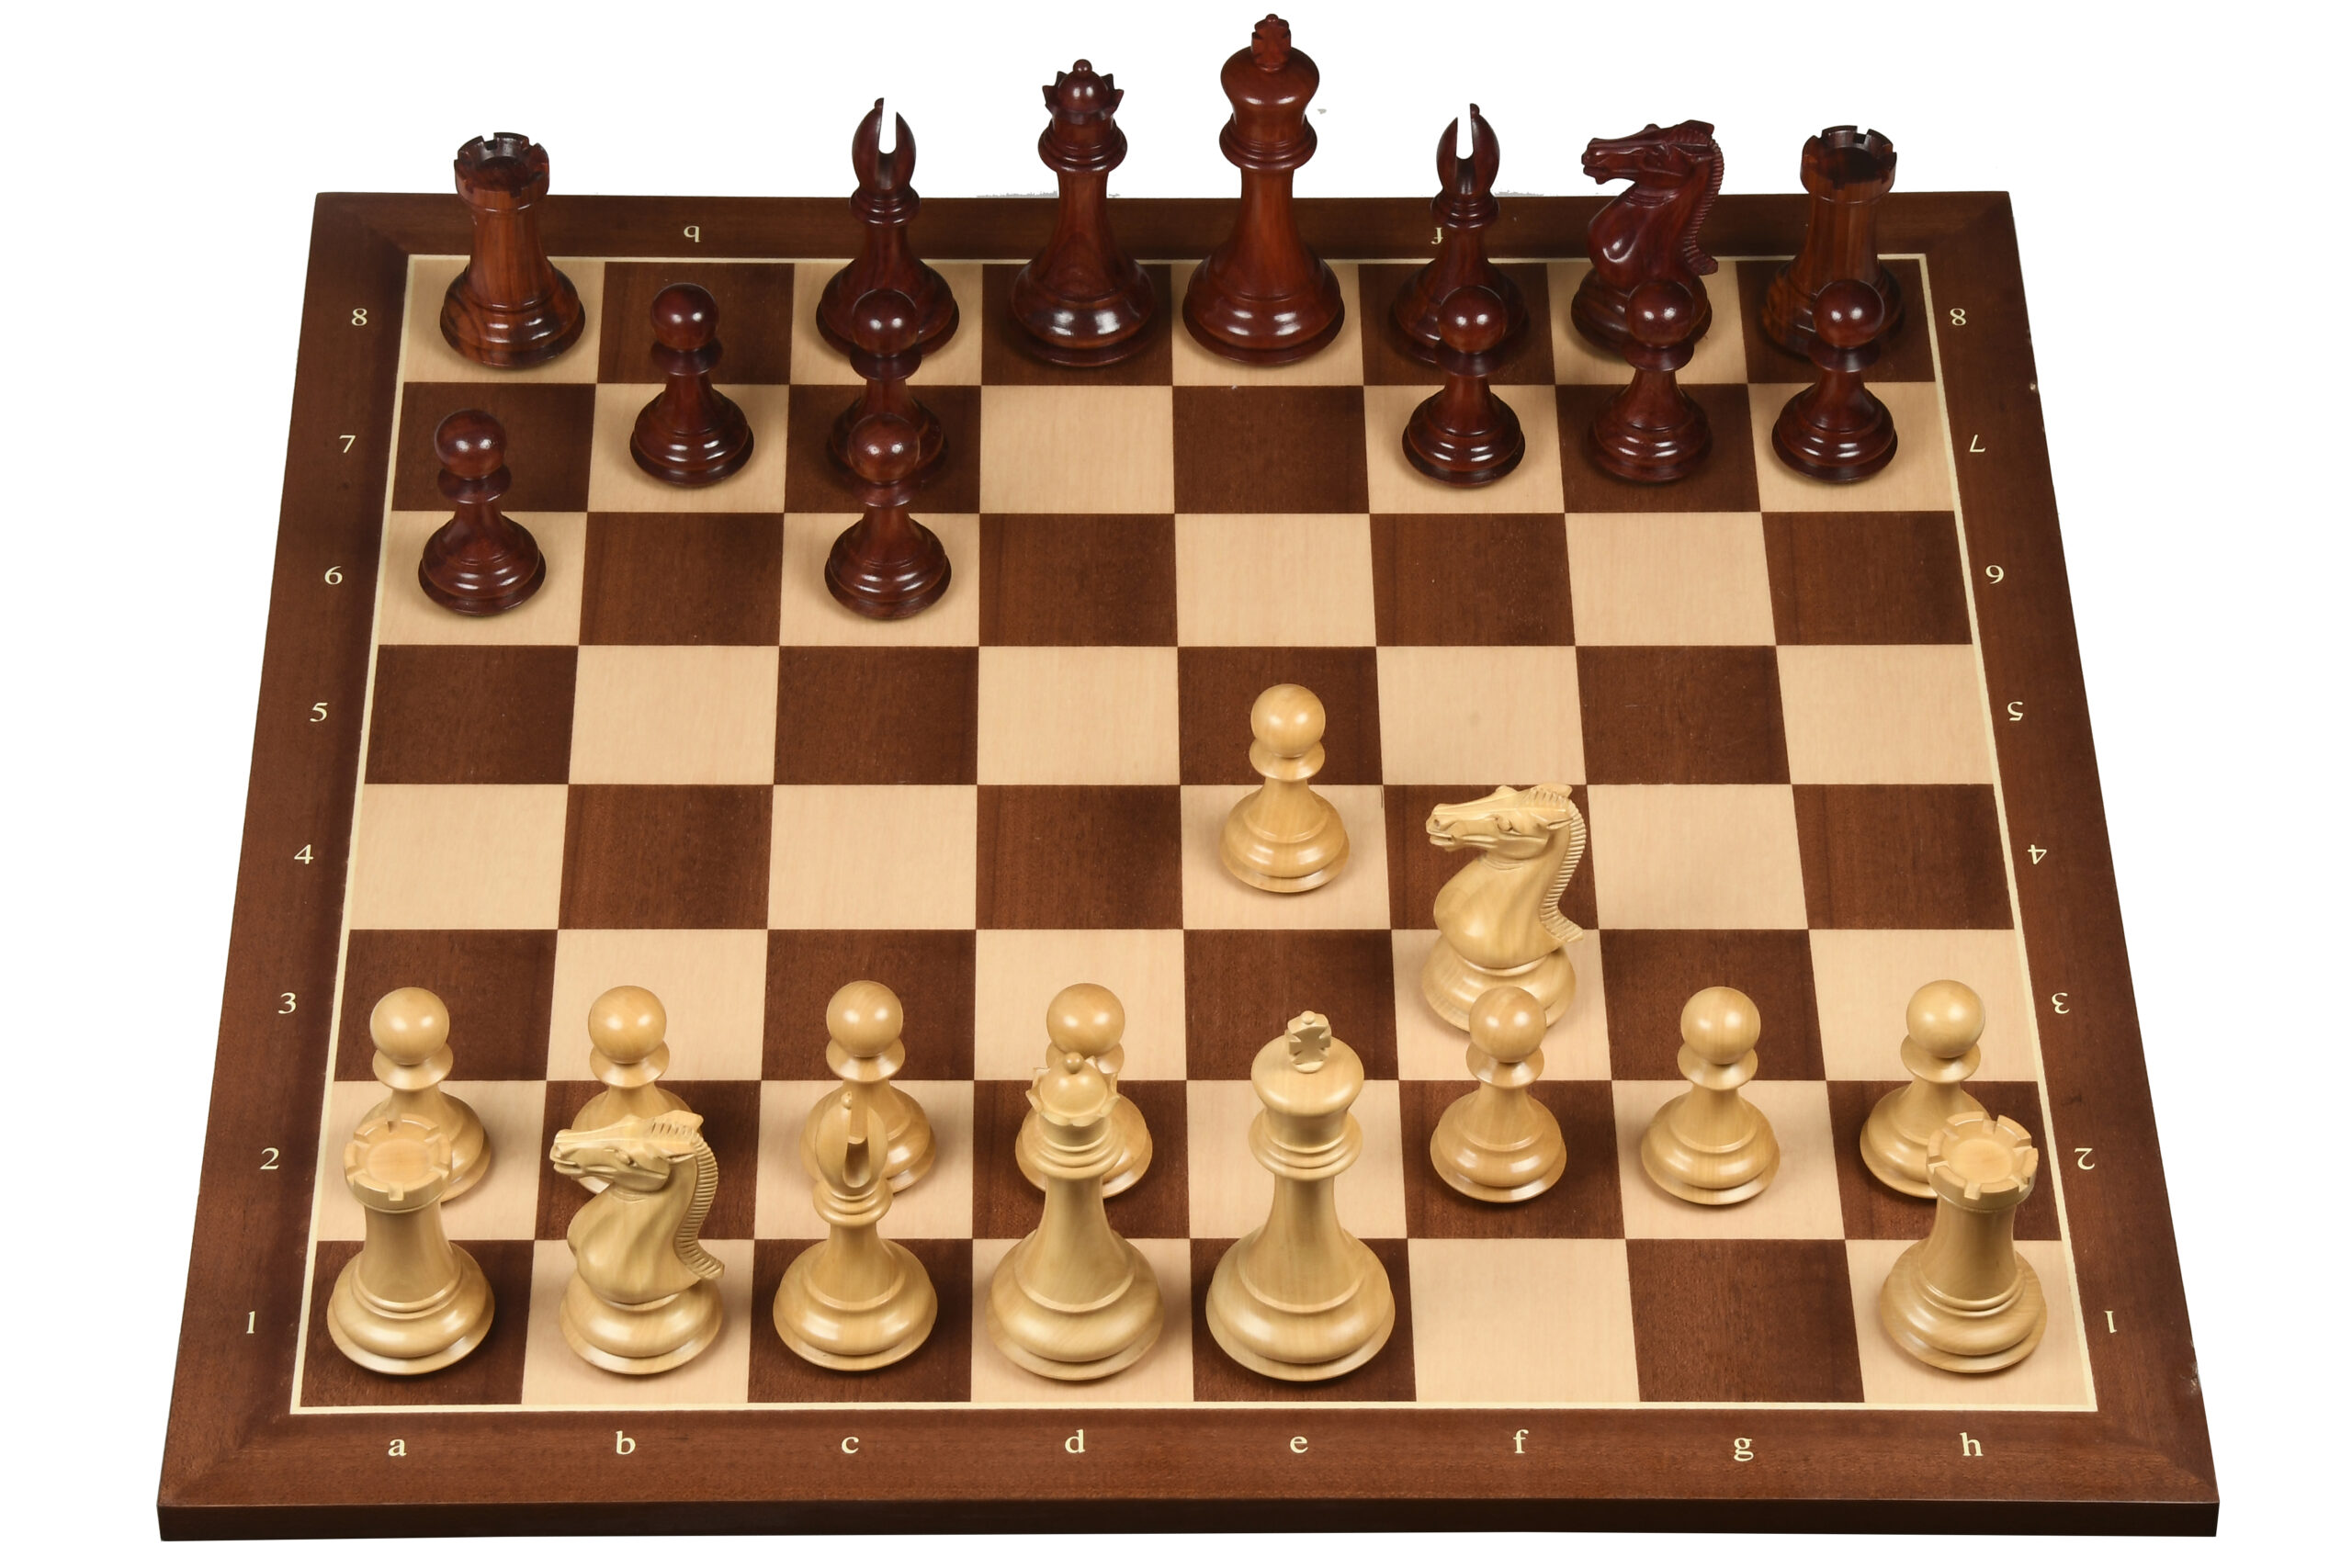 Chess Skills: Italian Opening: Developing Theory